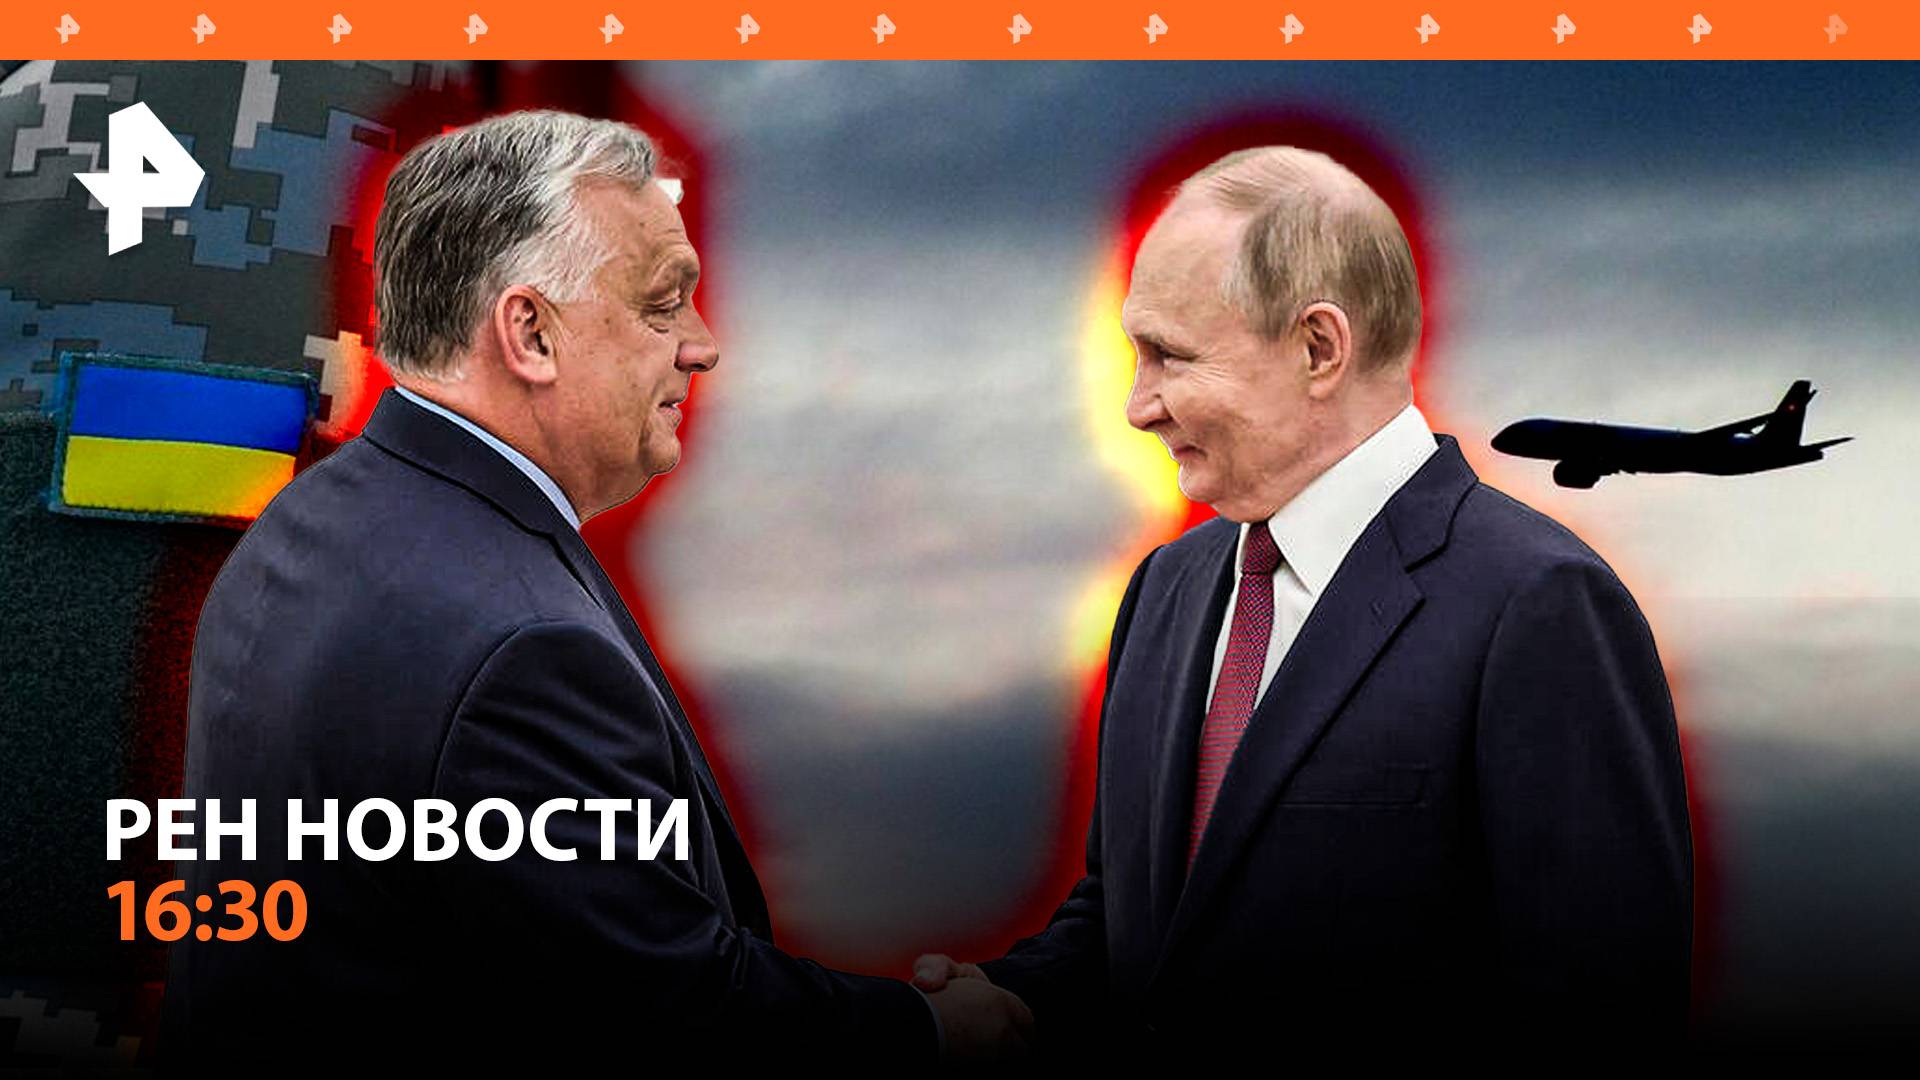 Неожиданные переговоры Путина и Орбана в Москве / Атака ВСУ на Волноваху / РЕН Новости 05.07, 16:30